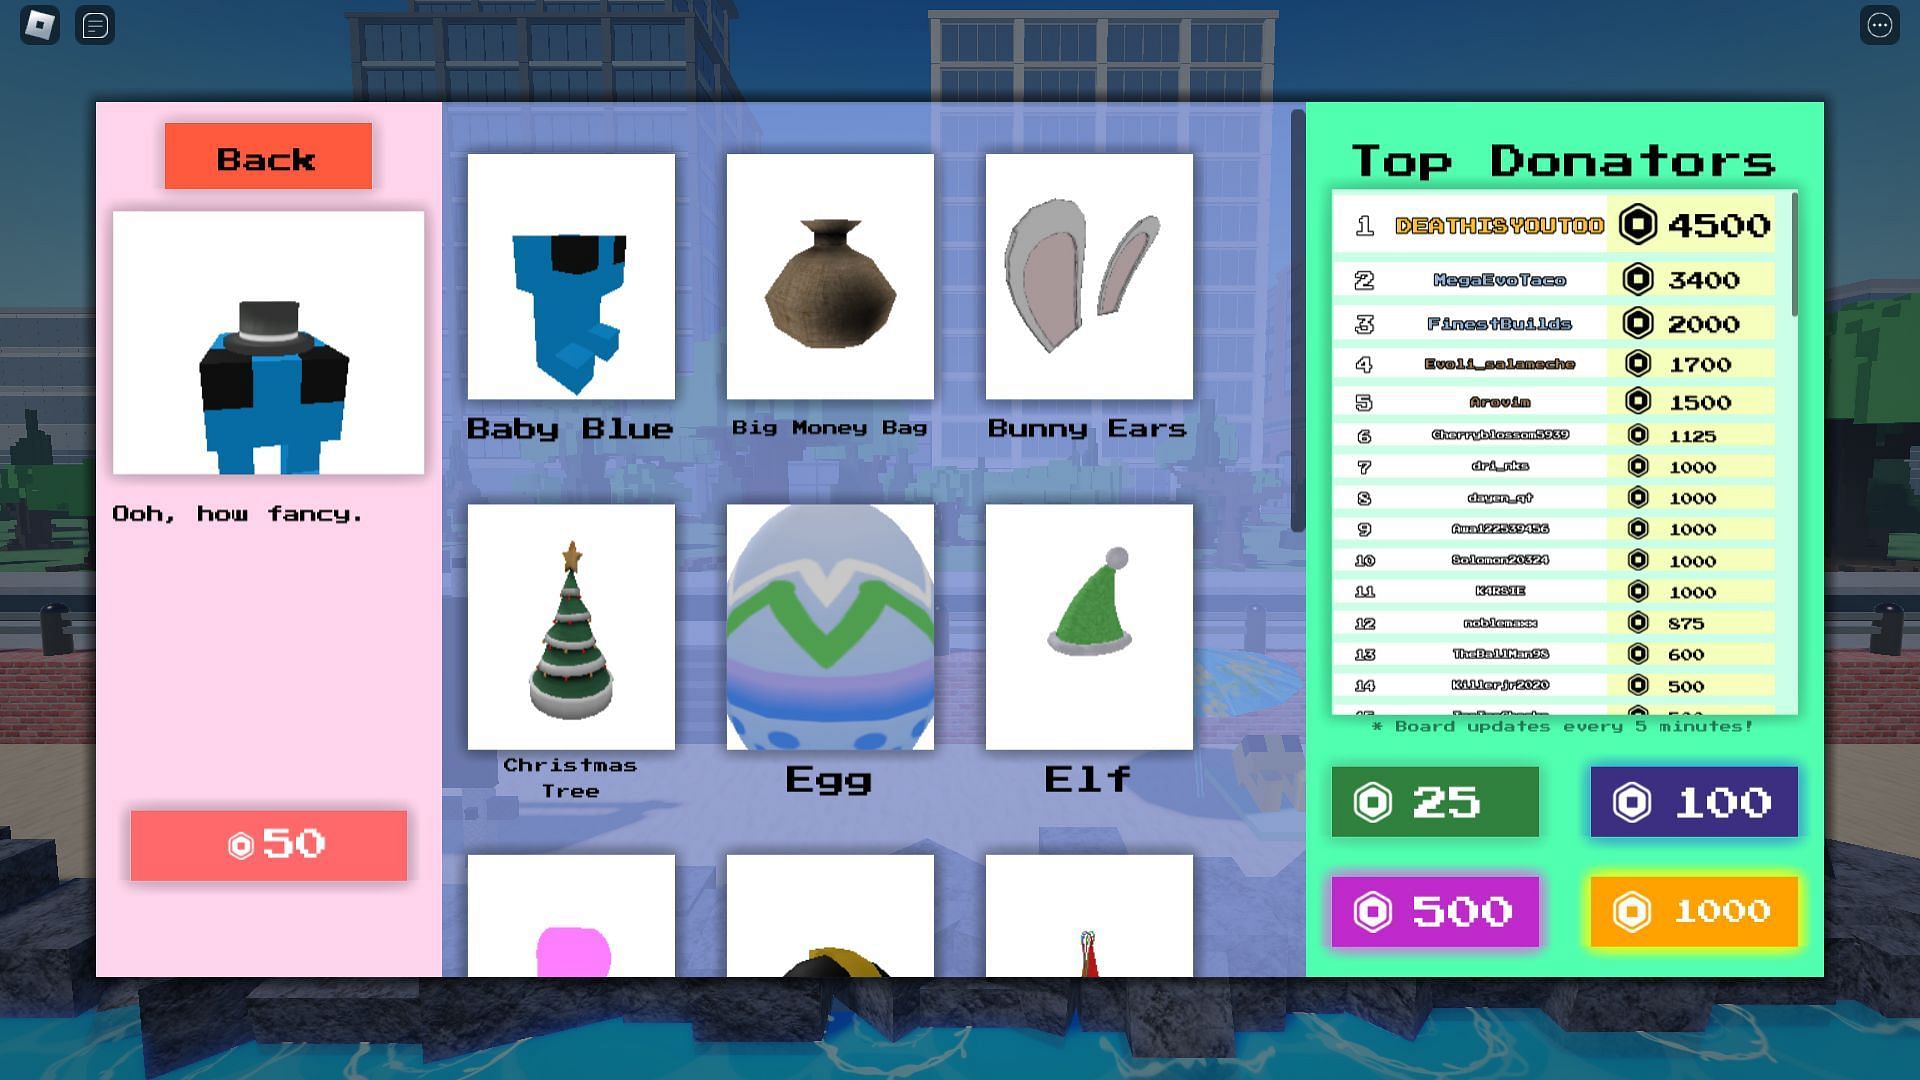 In-game shop menu (Image via Roblox)